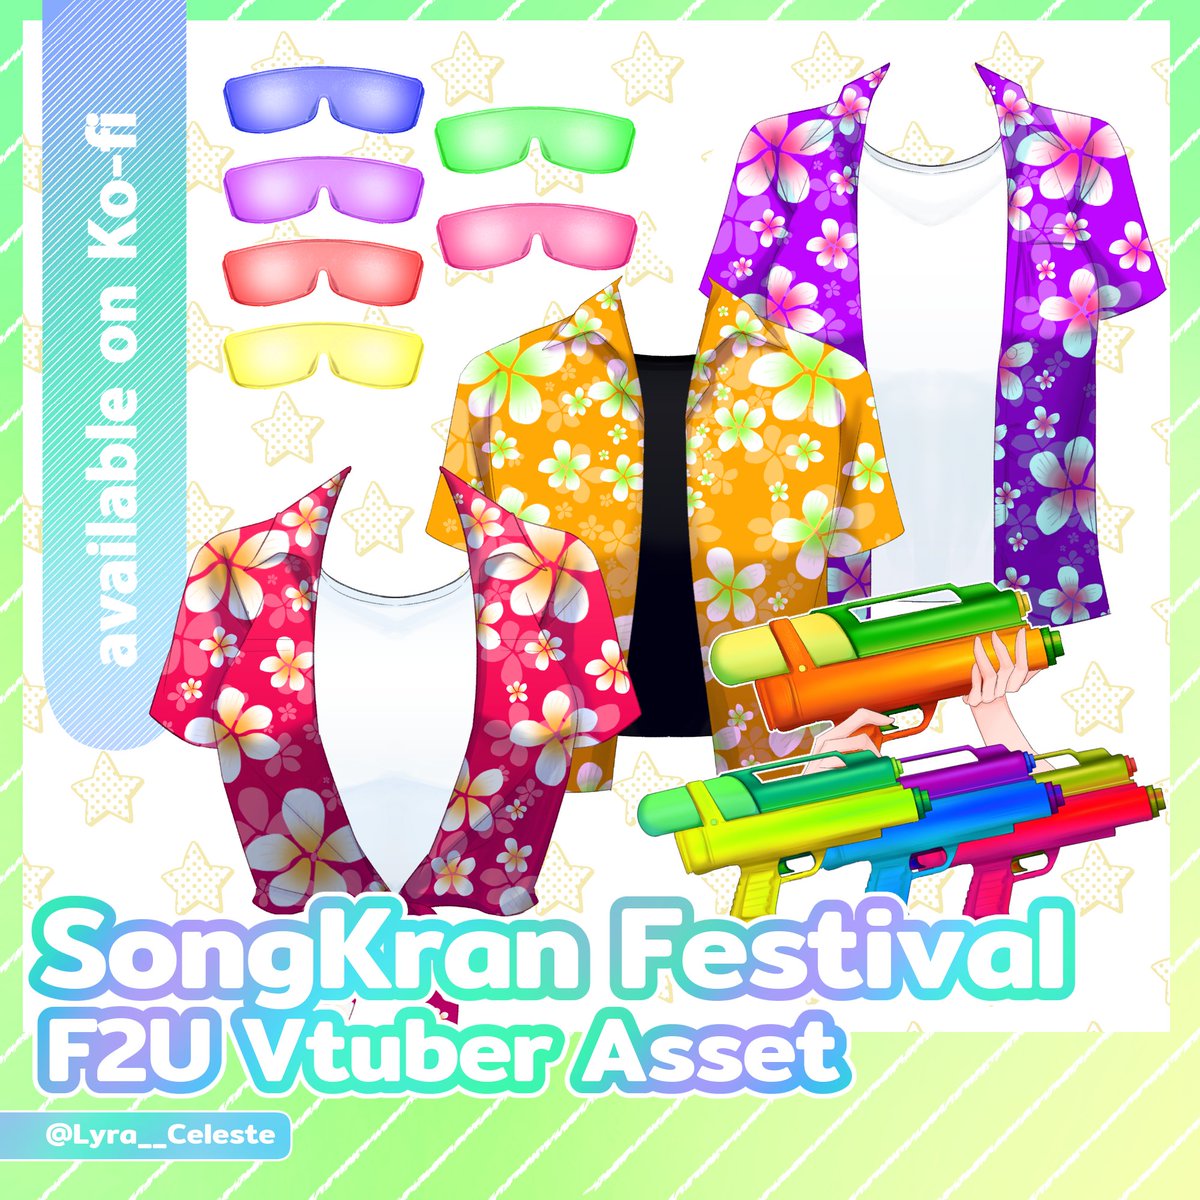 🌟 F2U | Vtuber asset : SongKran Festival costume มาแล้วค่ะะ Asset วันสงกรานต์ปีนี้ 🥳 ก็เดี๋ยวจะแปะลิ้งค์ให้โหลดในเมนชั่นนะคะจะอยู่บน Ko-fi จะมีเสื้อสามแบบ แบบละ 6() สี แล้วก็มีเสื้อยืดด้านในให้ด้วย พร้อมปืนฉีดน้ำและแว่นตาค่ะะ #Vtuberasset #vtuberassets #VtuberTH #LyraAssets